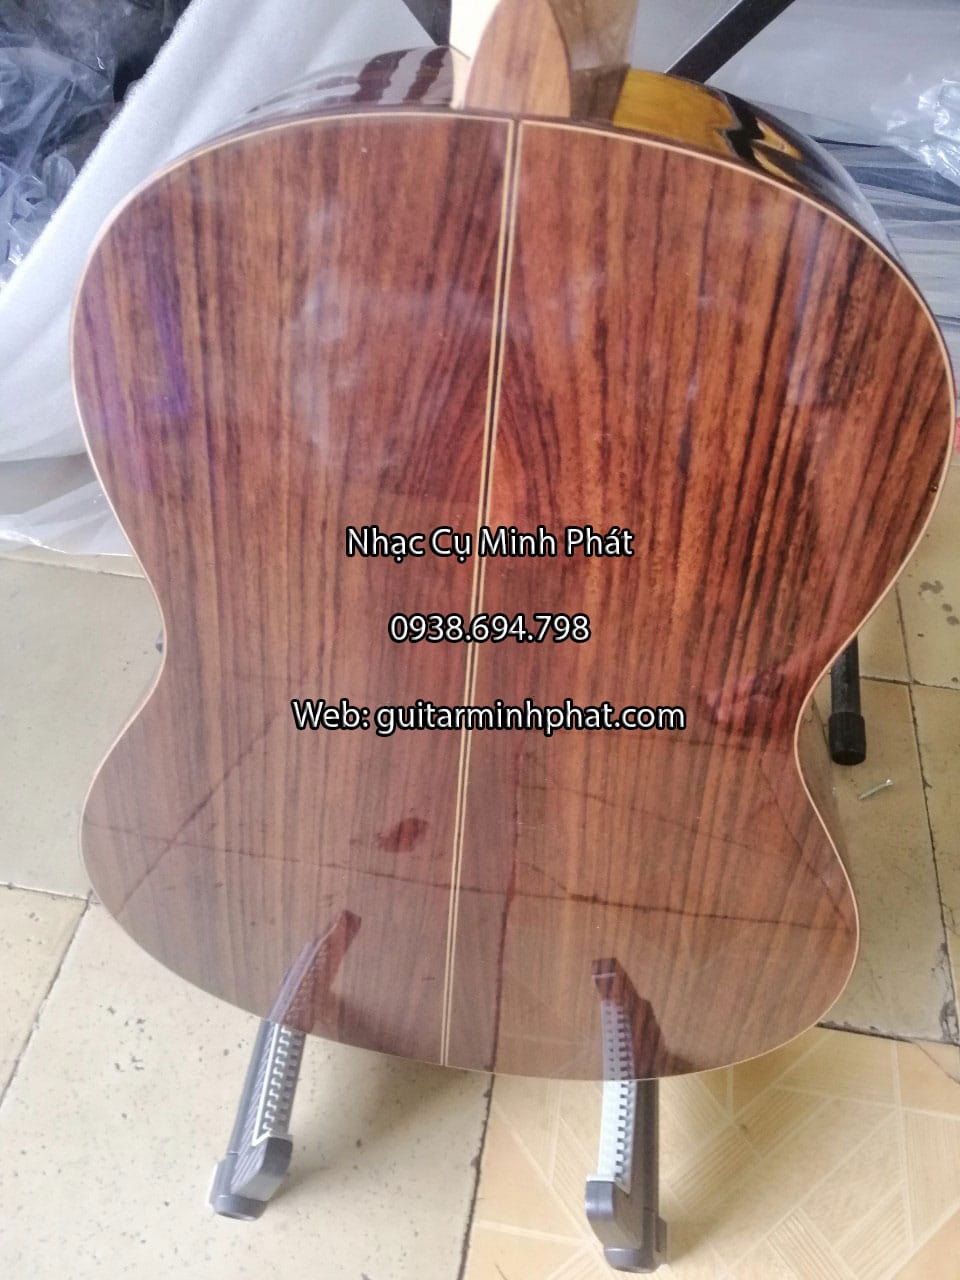 Hình ảnh chi tiết các góc cạnh của đàn guitar classic gỗ hồng đào - Nhạc Cụ Minh Phát